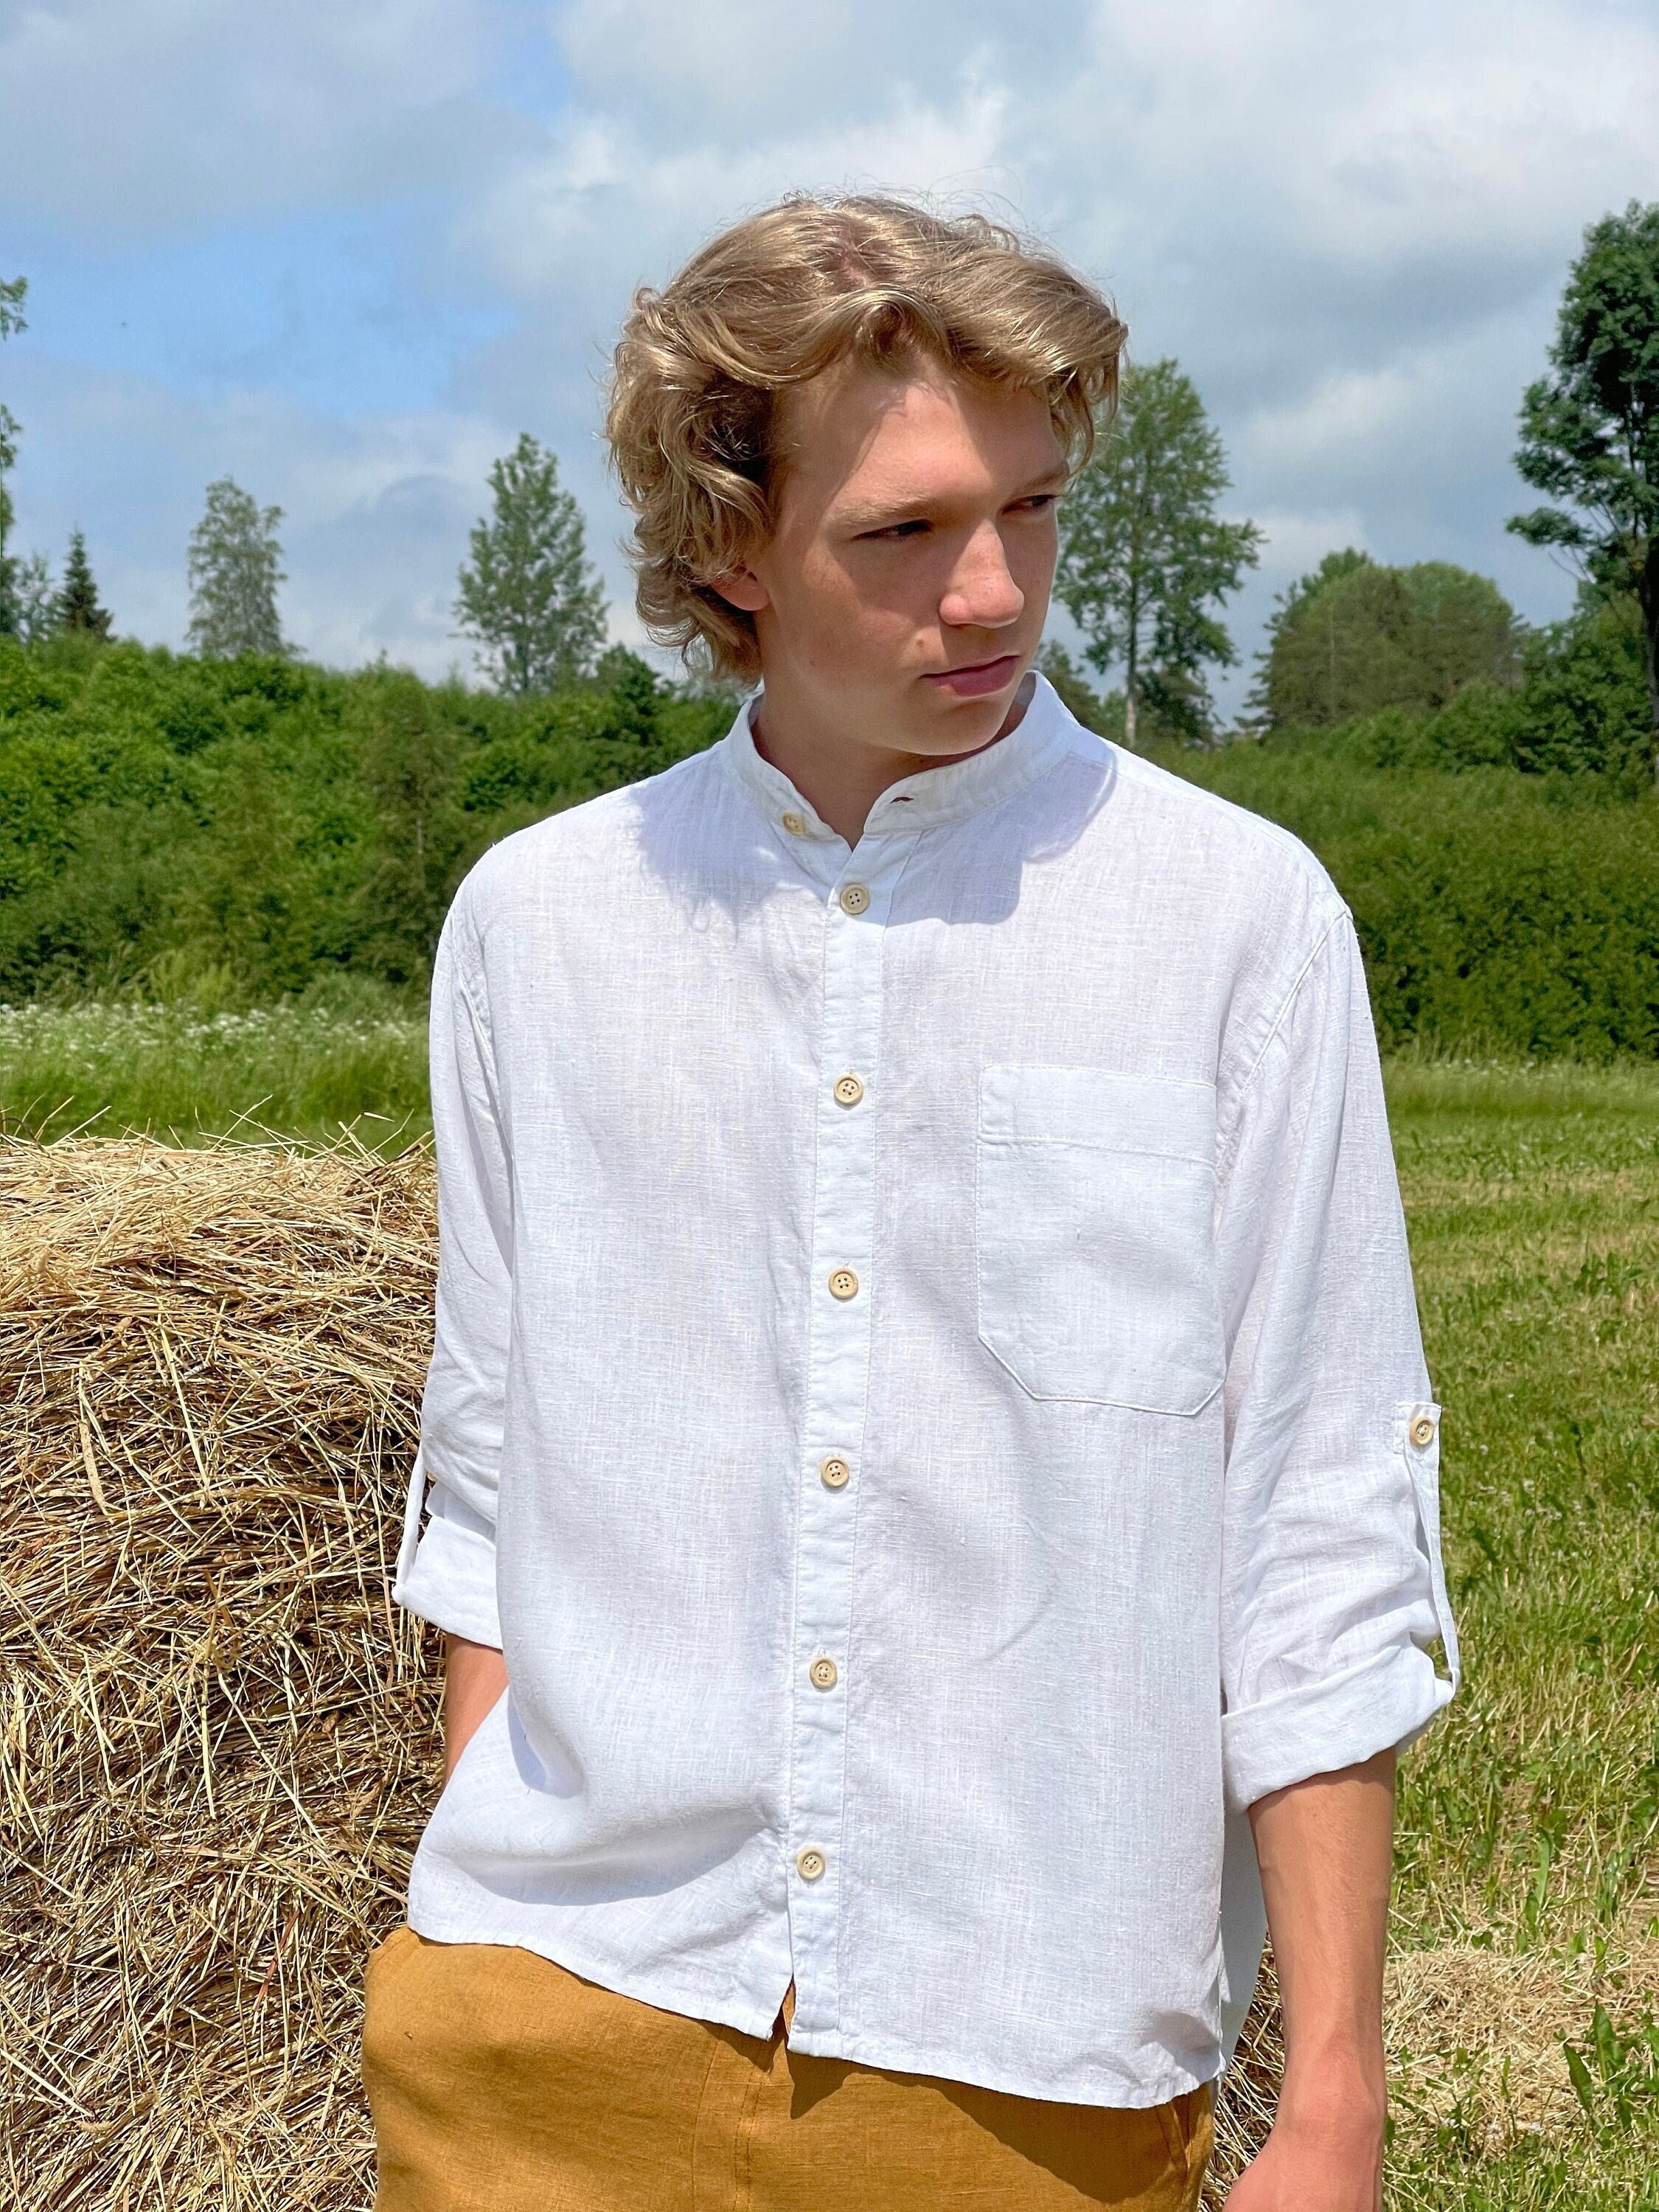 White Linen Shirt KARL, Linen Shirt with Buttons, Men's Shirt, Adjustable  Sleeve Shirt, Gift, Summer Linen Shirt, Long Sleeve Men's Shirt